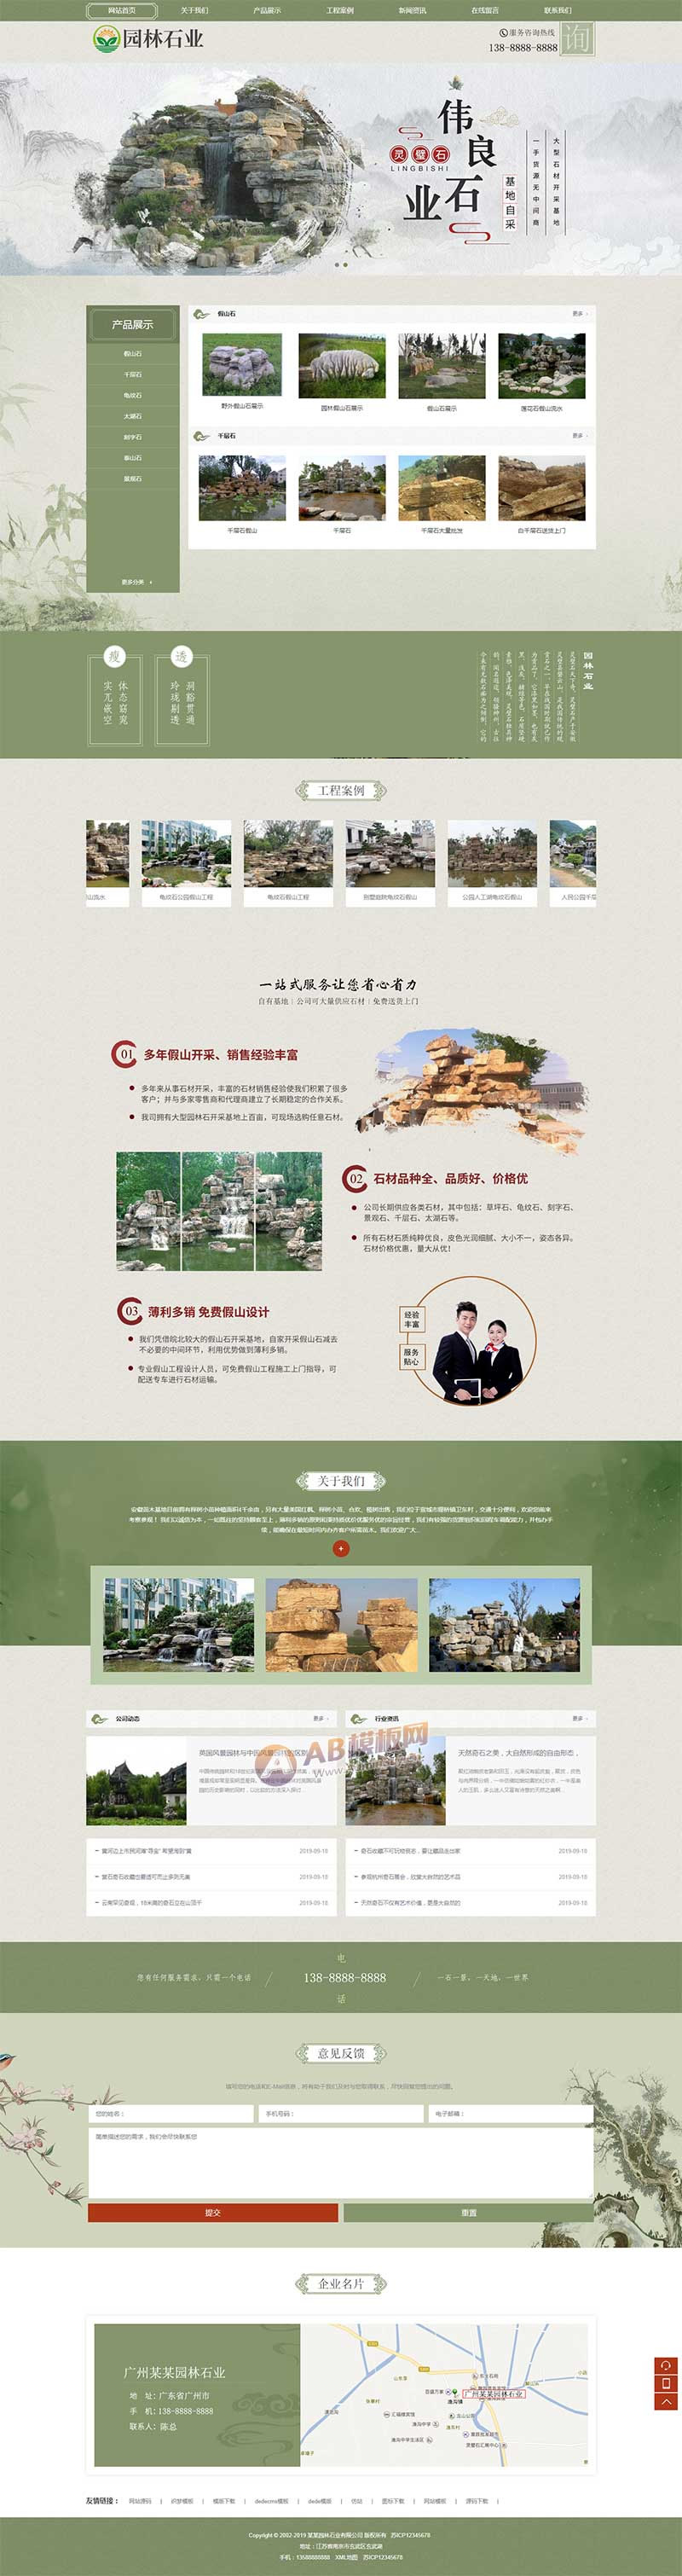 中国风古典园林石业网站源码 水墨风格园林艺术织梦模板 （带手机版数据同步）